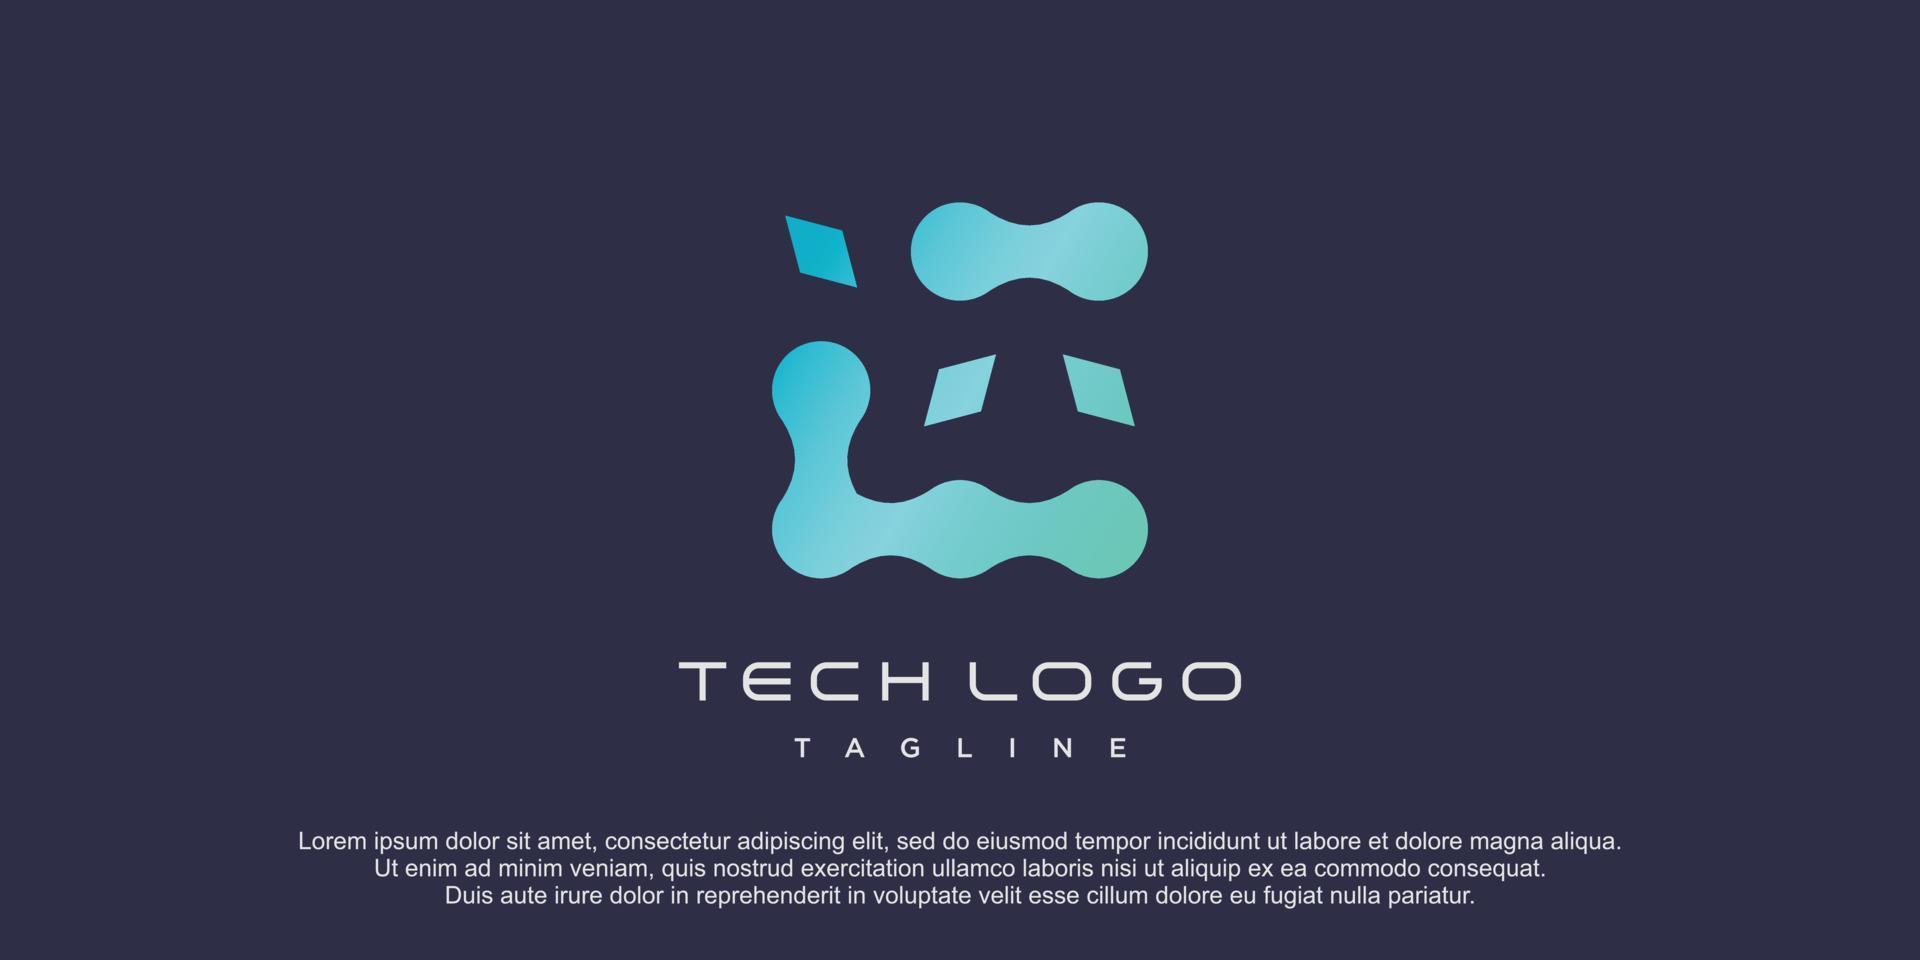 Tech logo with creative concept premium vector